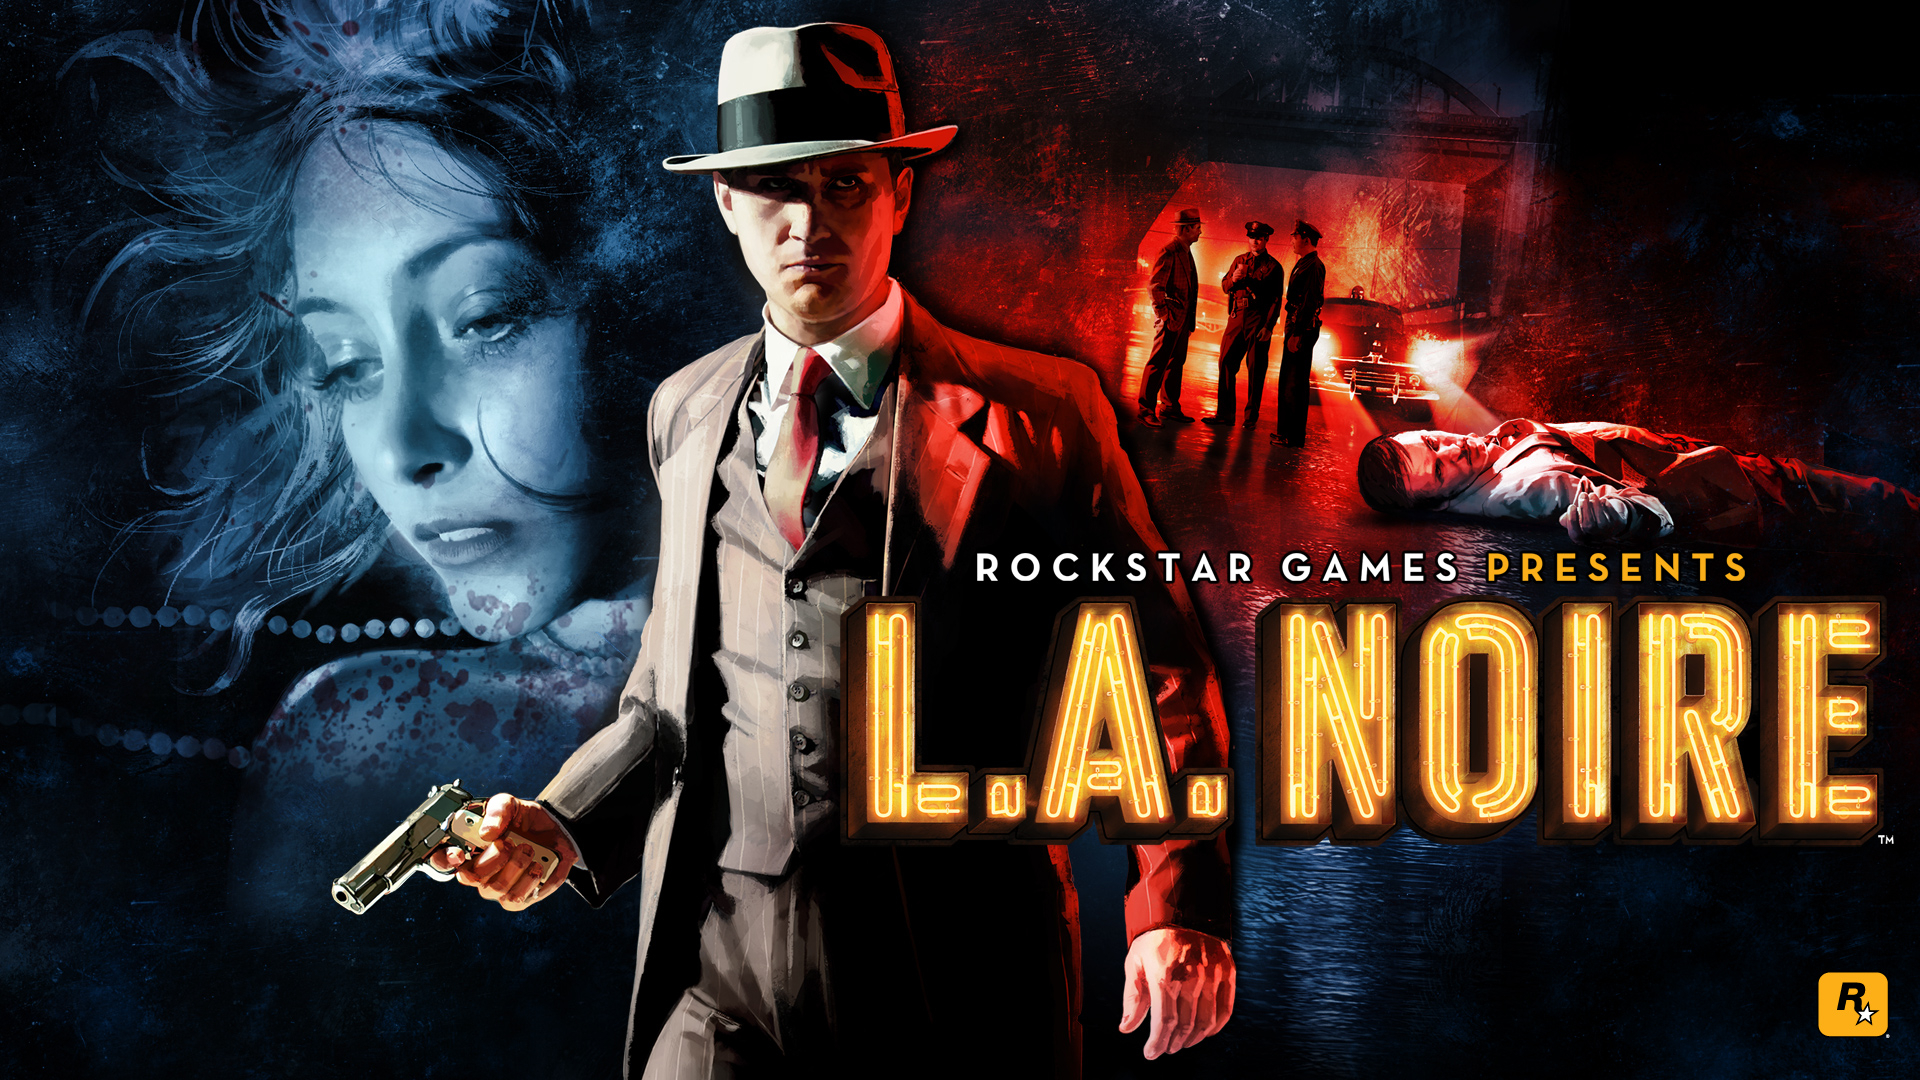 Обложка игры L.A. Noire